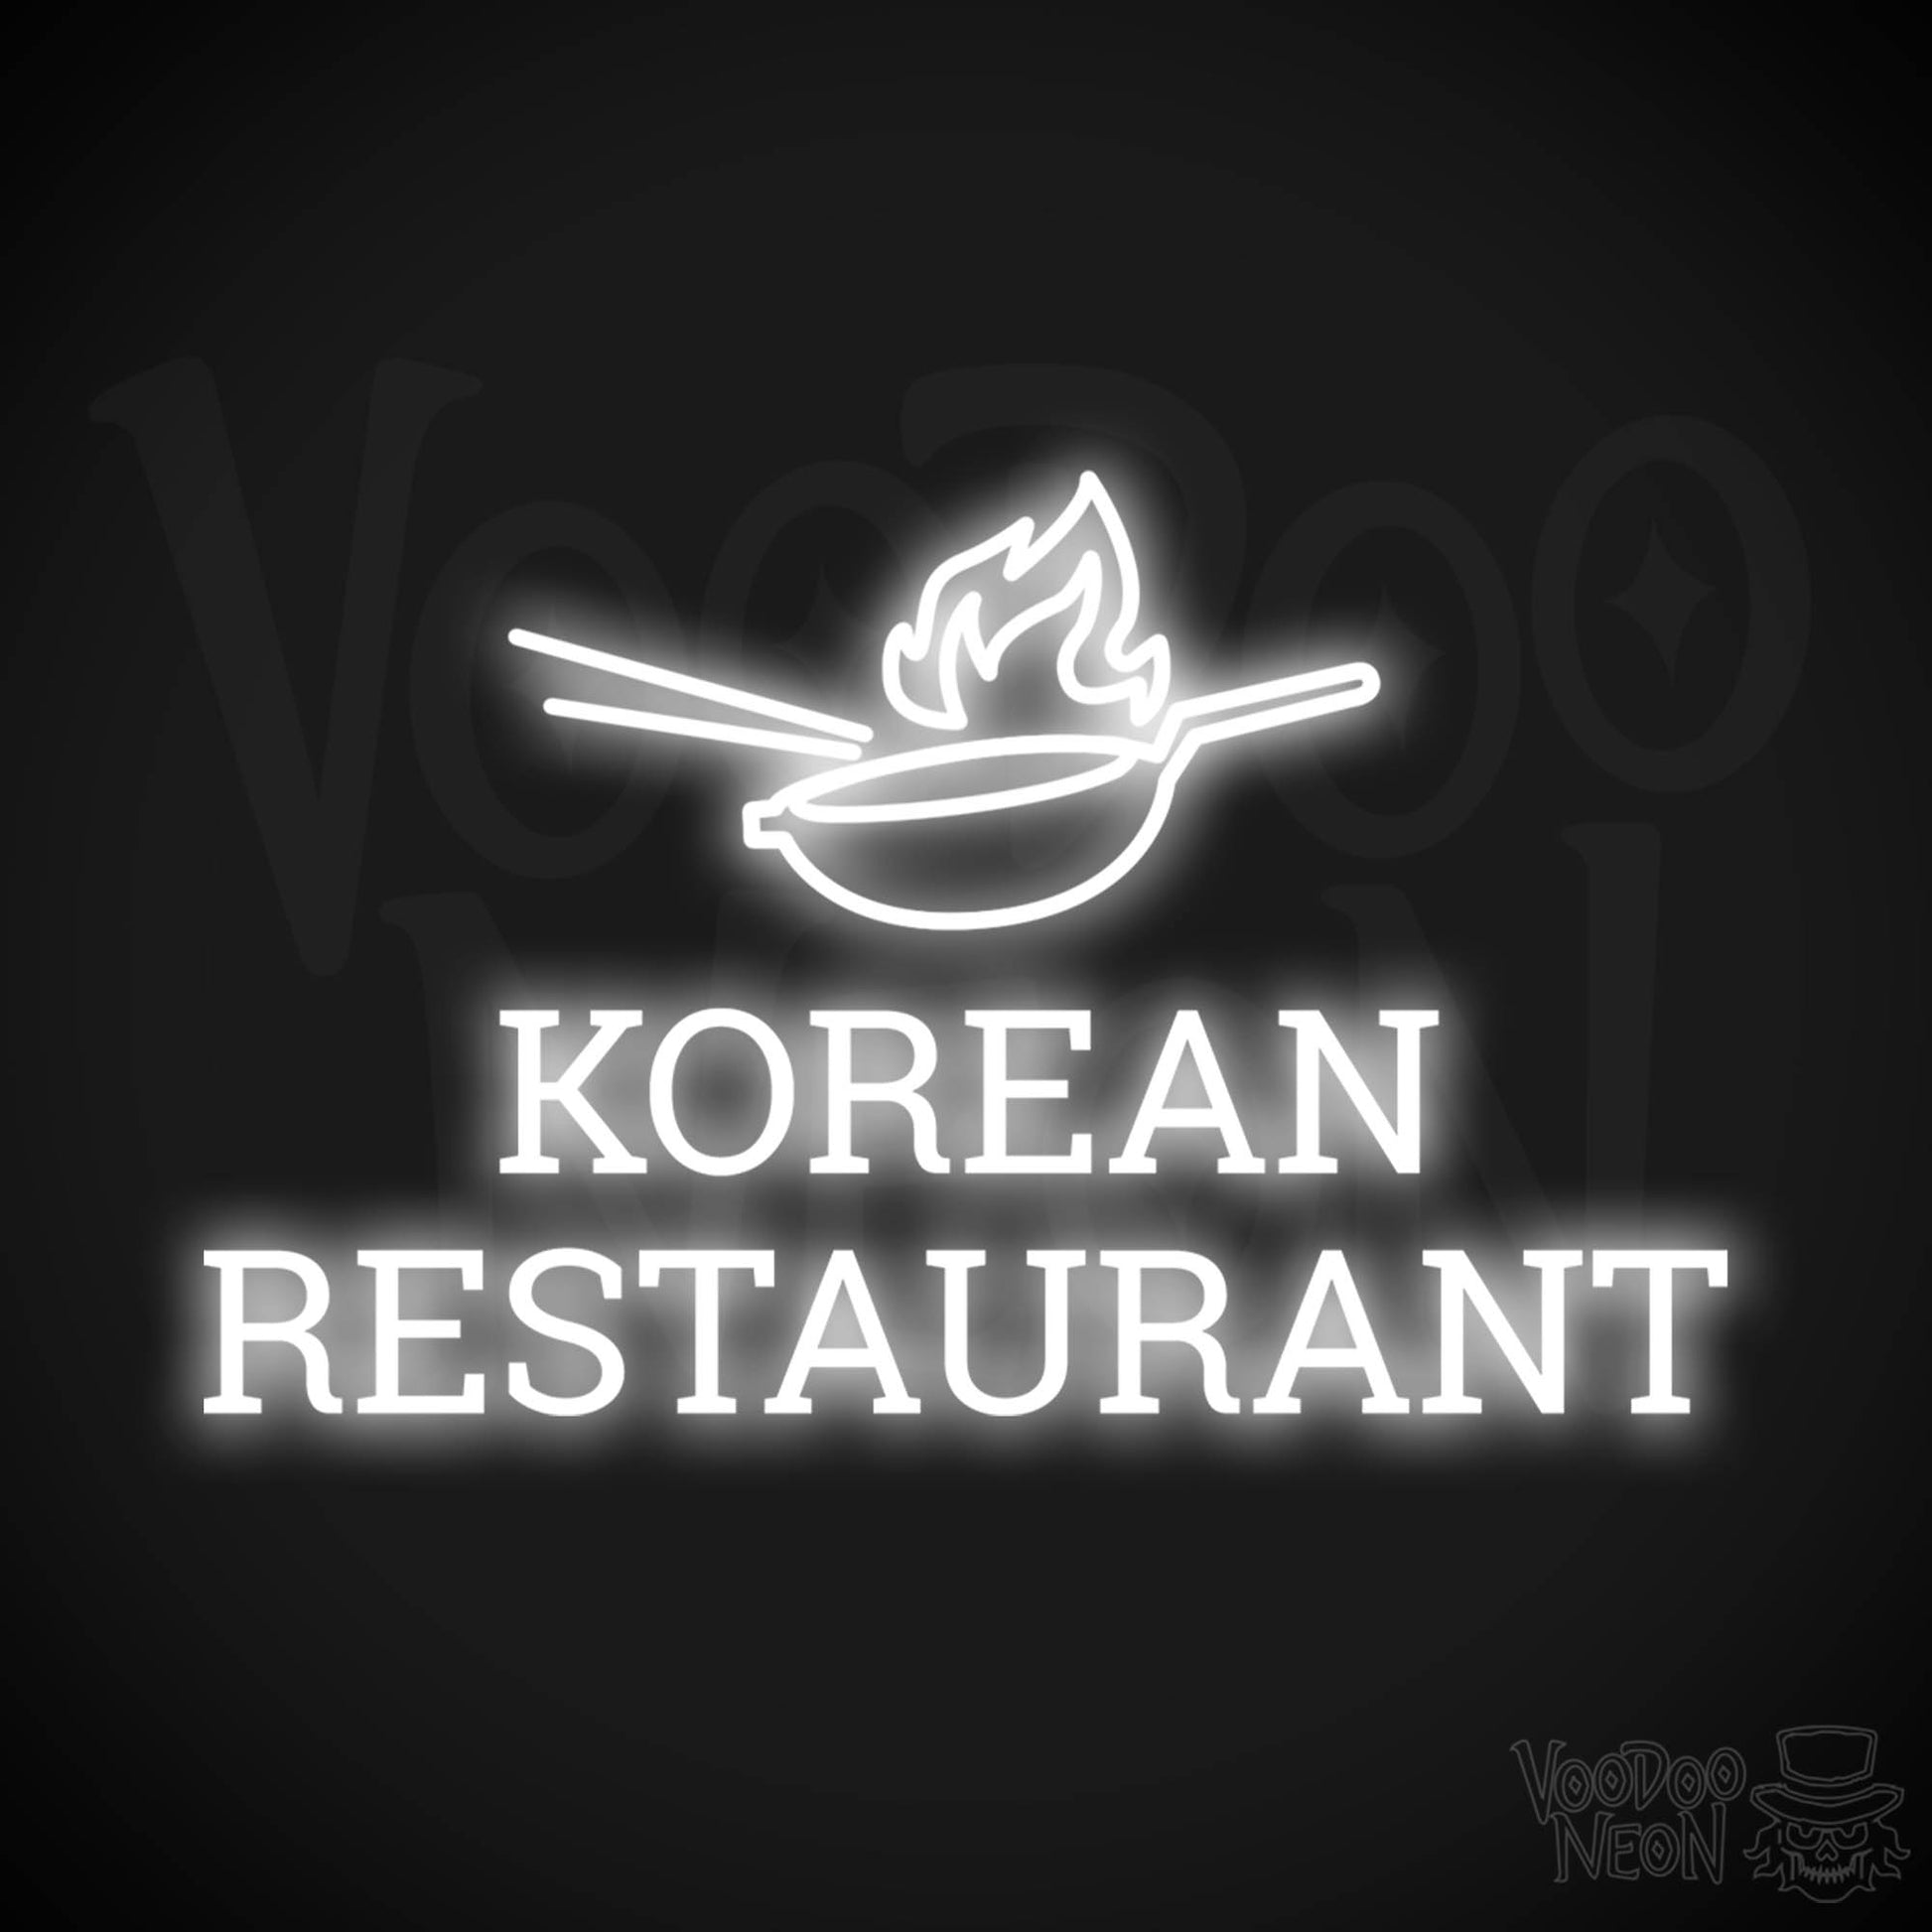 Korean Restaurant LED Neon - White